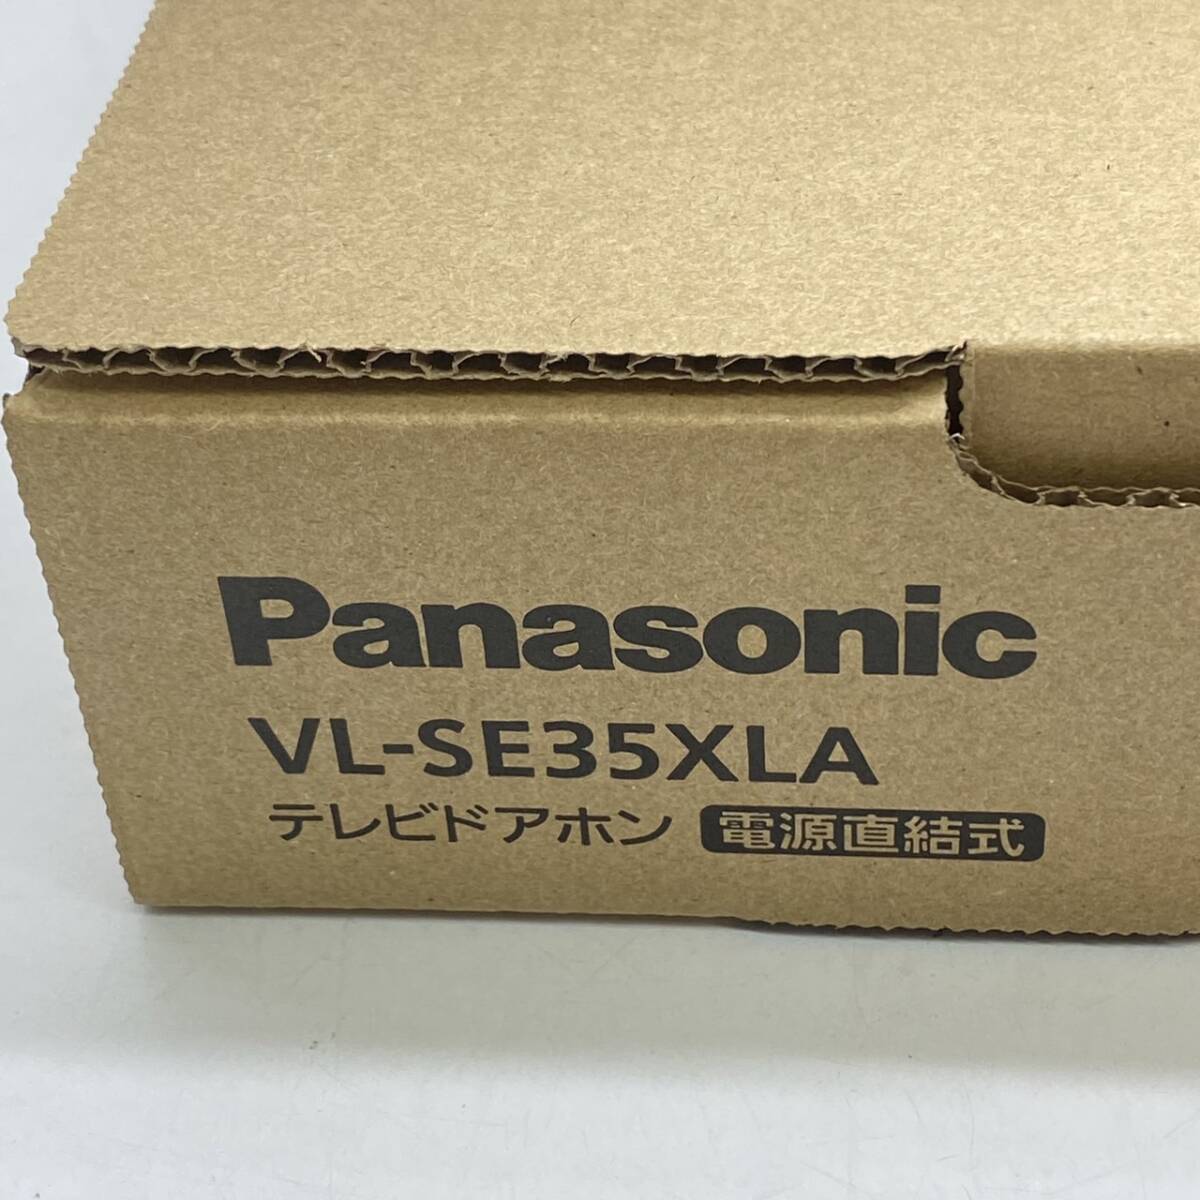 送料無料g30579 Panasonic パナソニック VL-SE35XLA テレビドアホン 電源直結 録画 録音機能付き 防犯 セキュリティ インターホン ドアホンの画像3